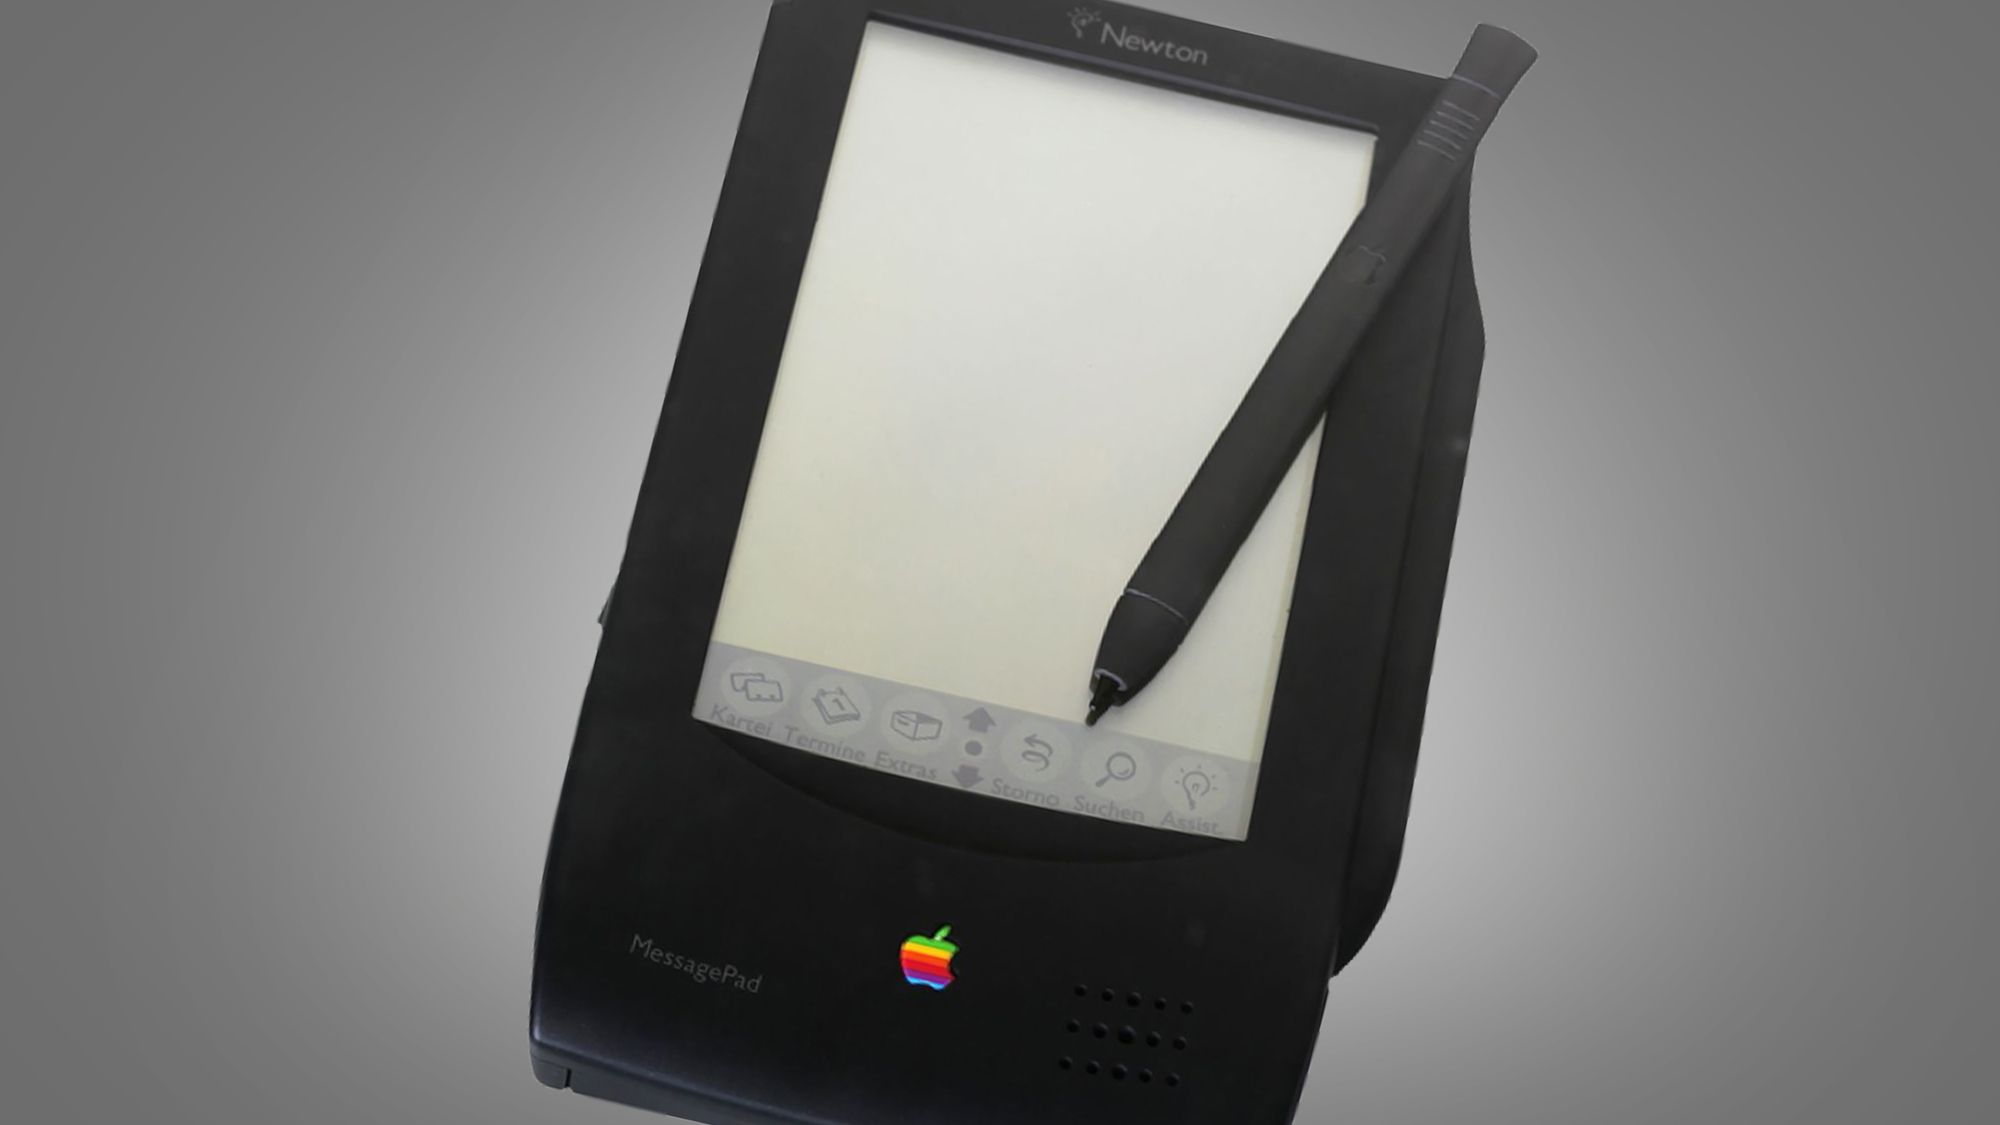 The Apple Newton Messagepad 100 на сером фоне